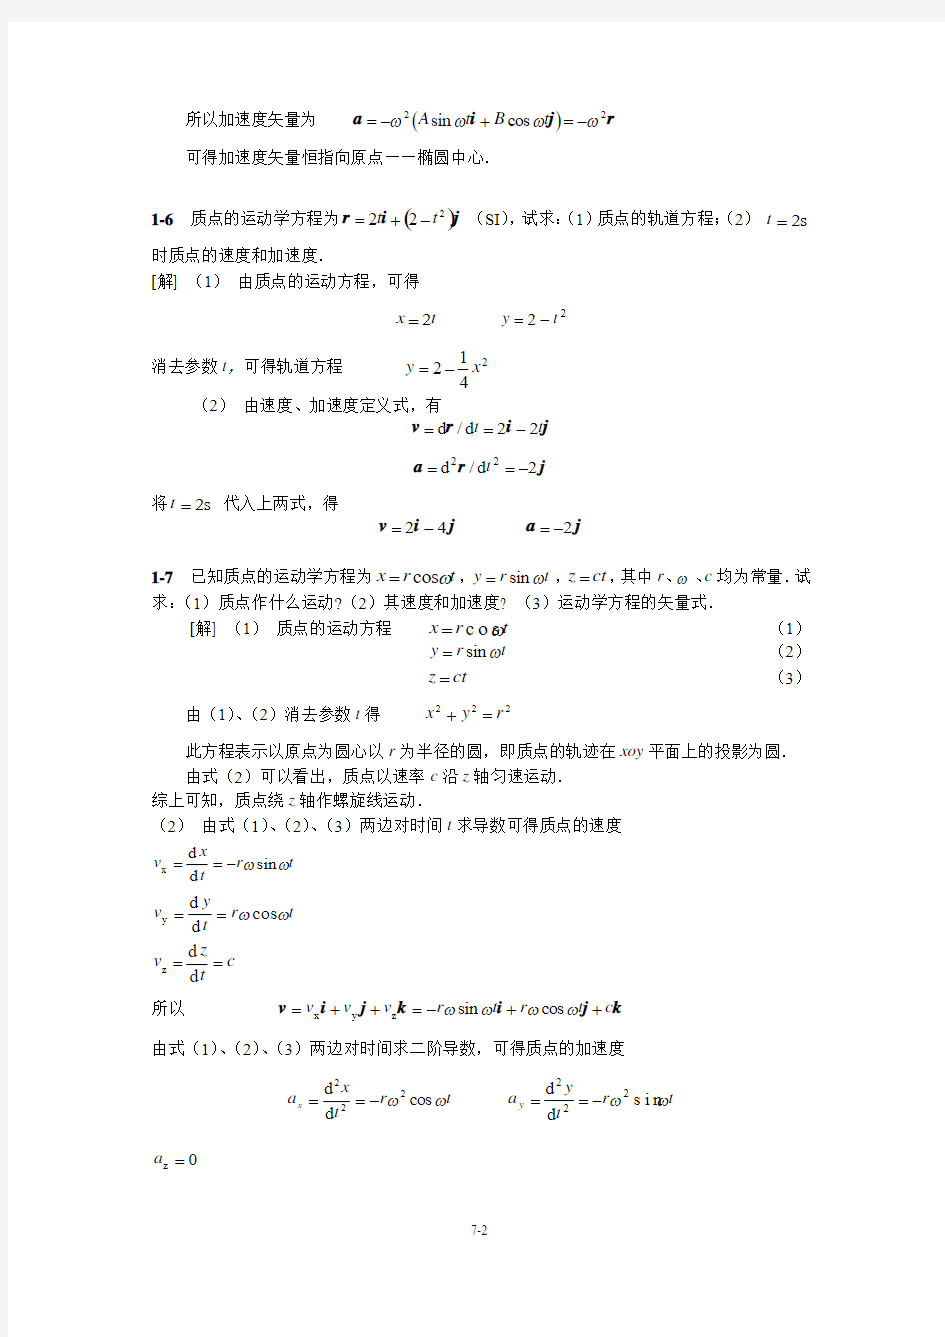 中国石油大学(华东)  大学物理2-1 课后习题答案